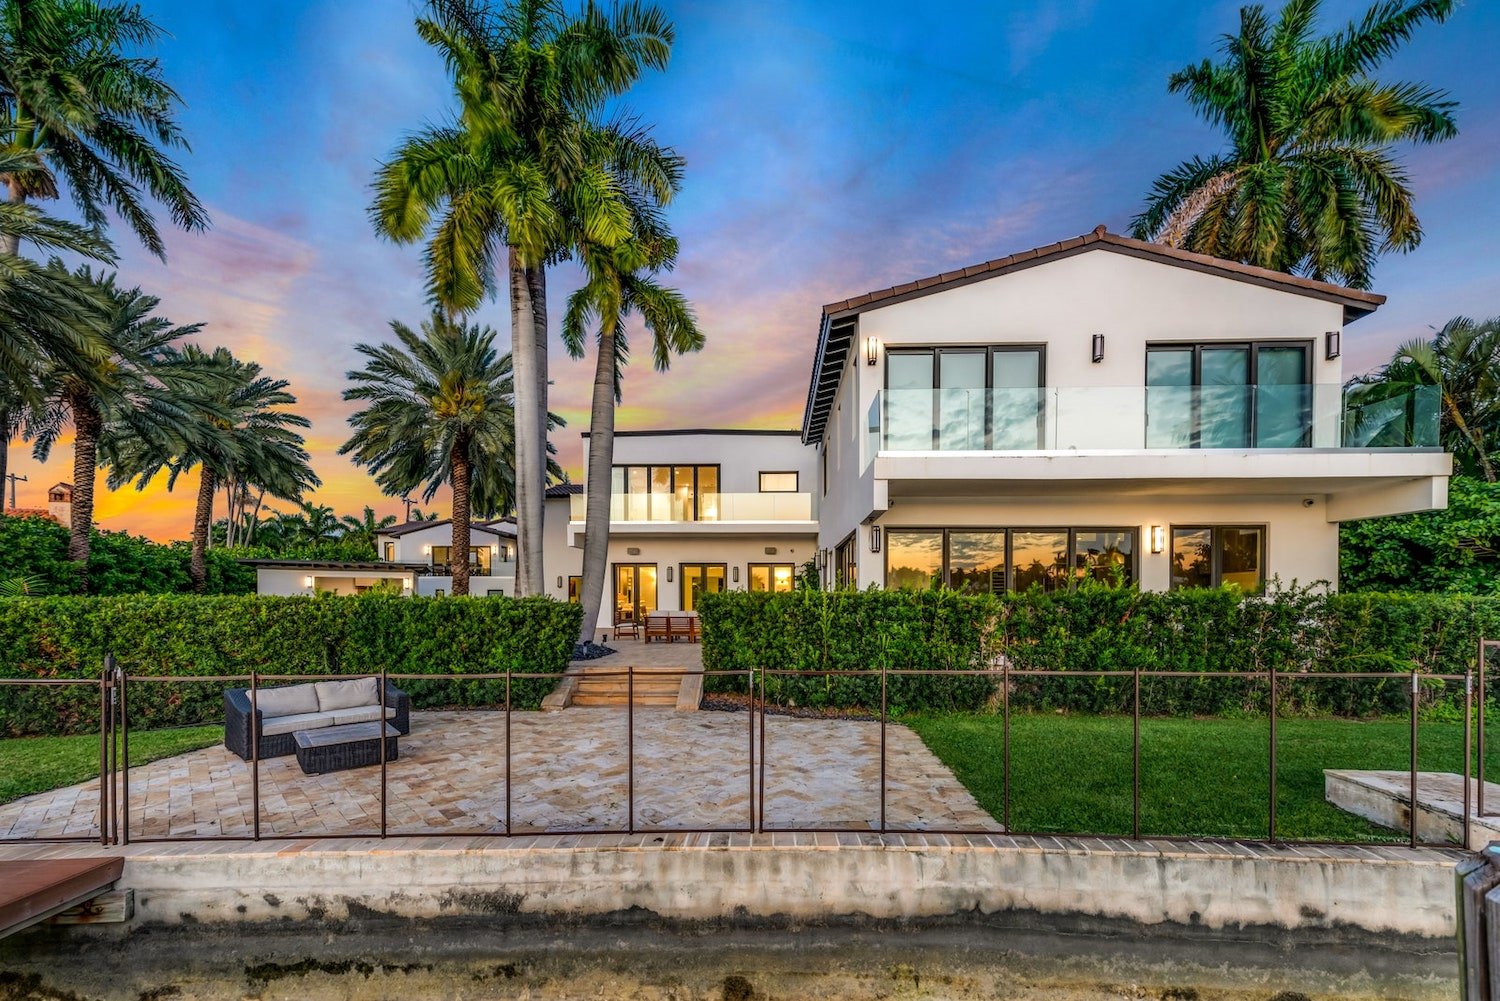 Casa Jennifer Lopez y Ben Affleck en Miami jardín con acceso a embarcadero